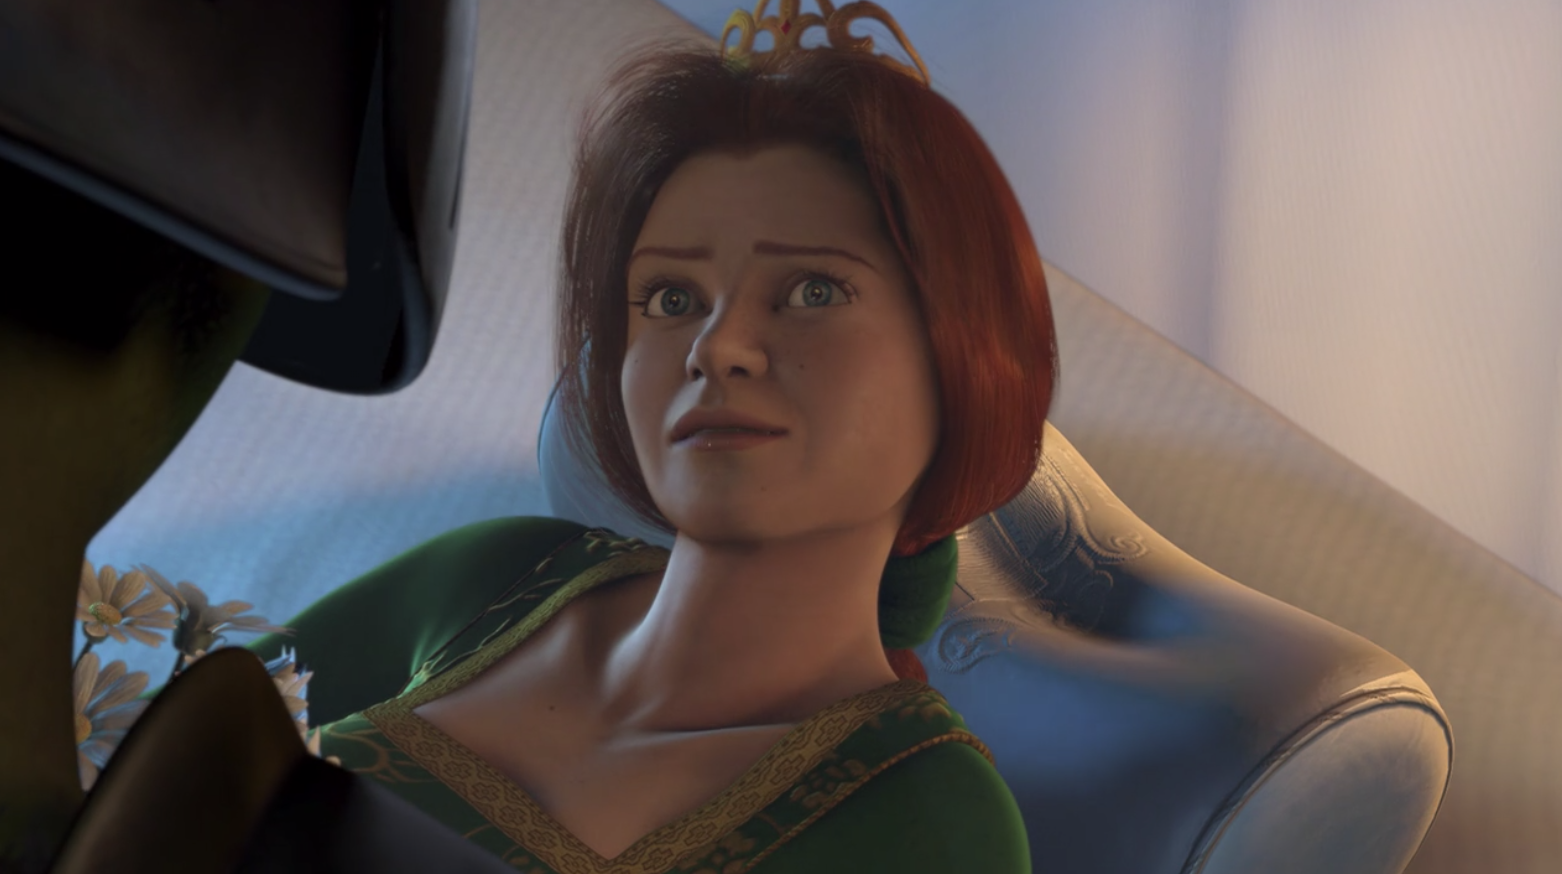 Princess Fiona looking up at Shrek